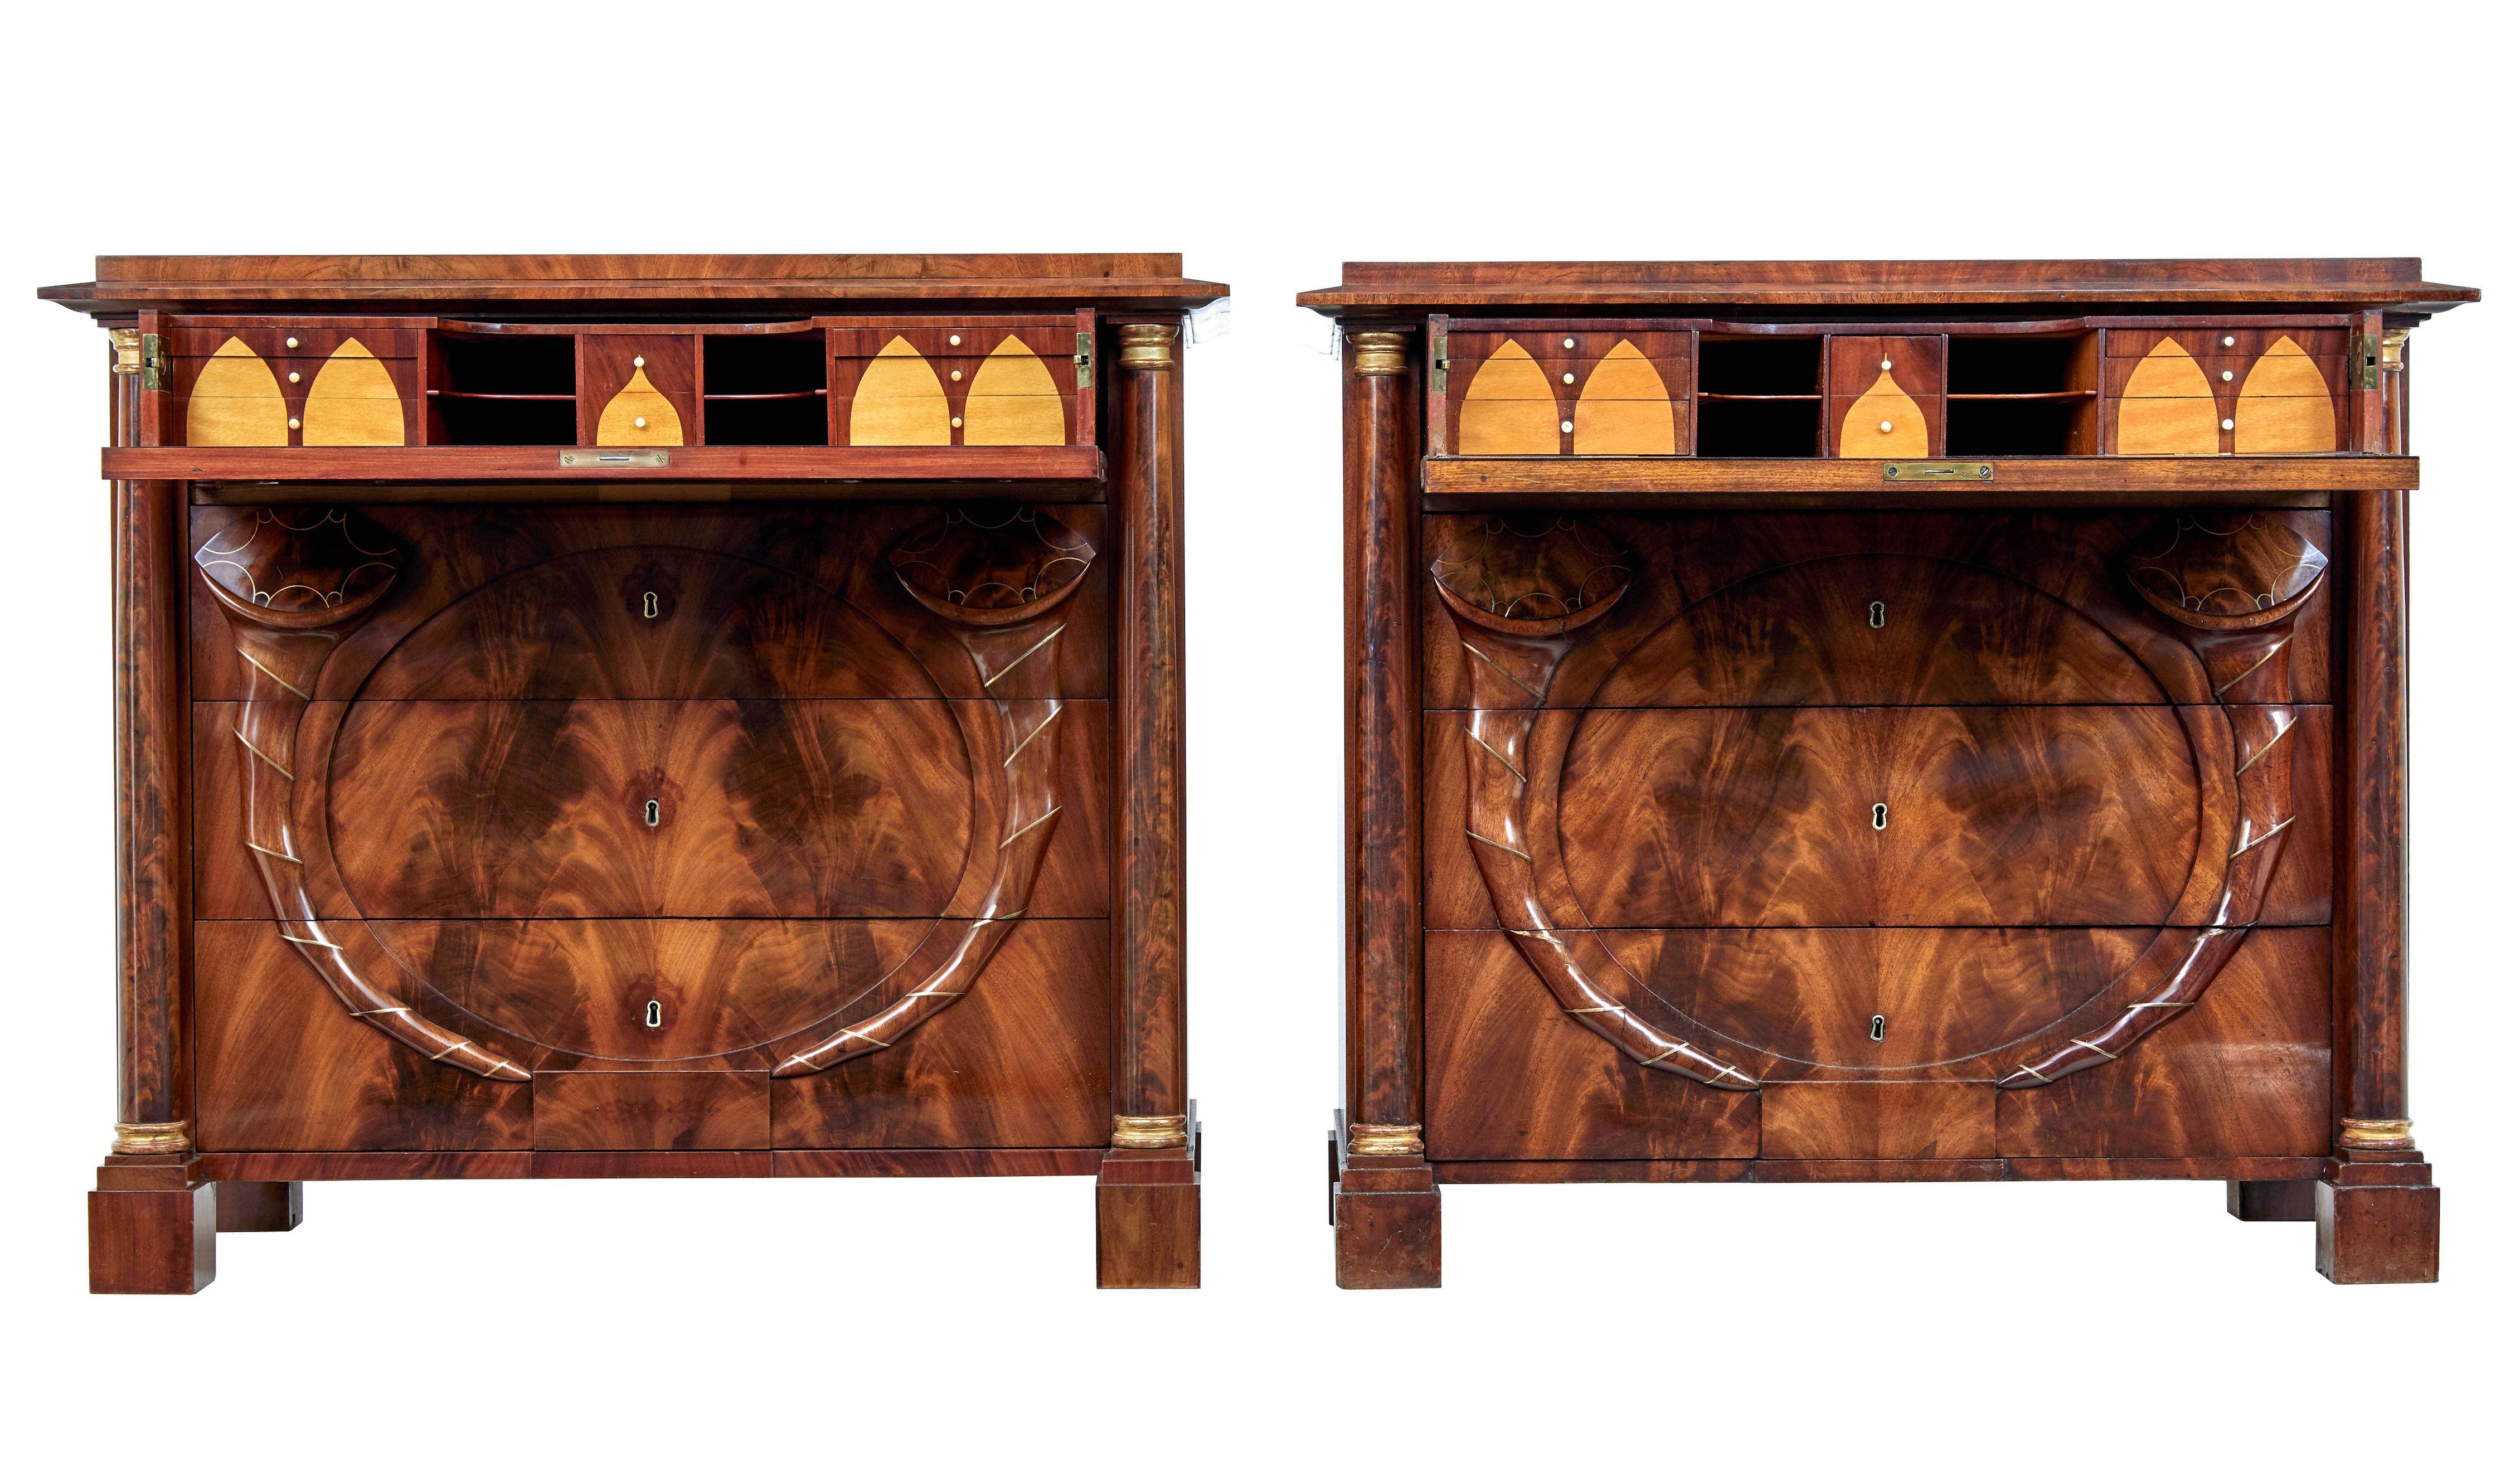 Paar Mahagoni-Sekretärkommoden des frühen 19. Jahrhunderts aus Biedermeier, um 1830.

Seltenes Paar schwedischer Kommoden aus dem Biedermeier.  4 Schubladen, jede obere Schublade mit einem voll ausgestatteten Innenraum aus Satinholz und Mahagoni